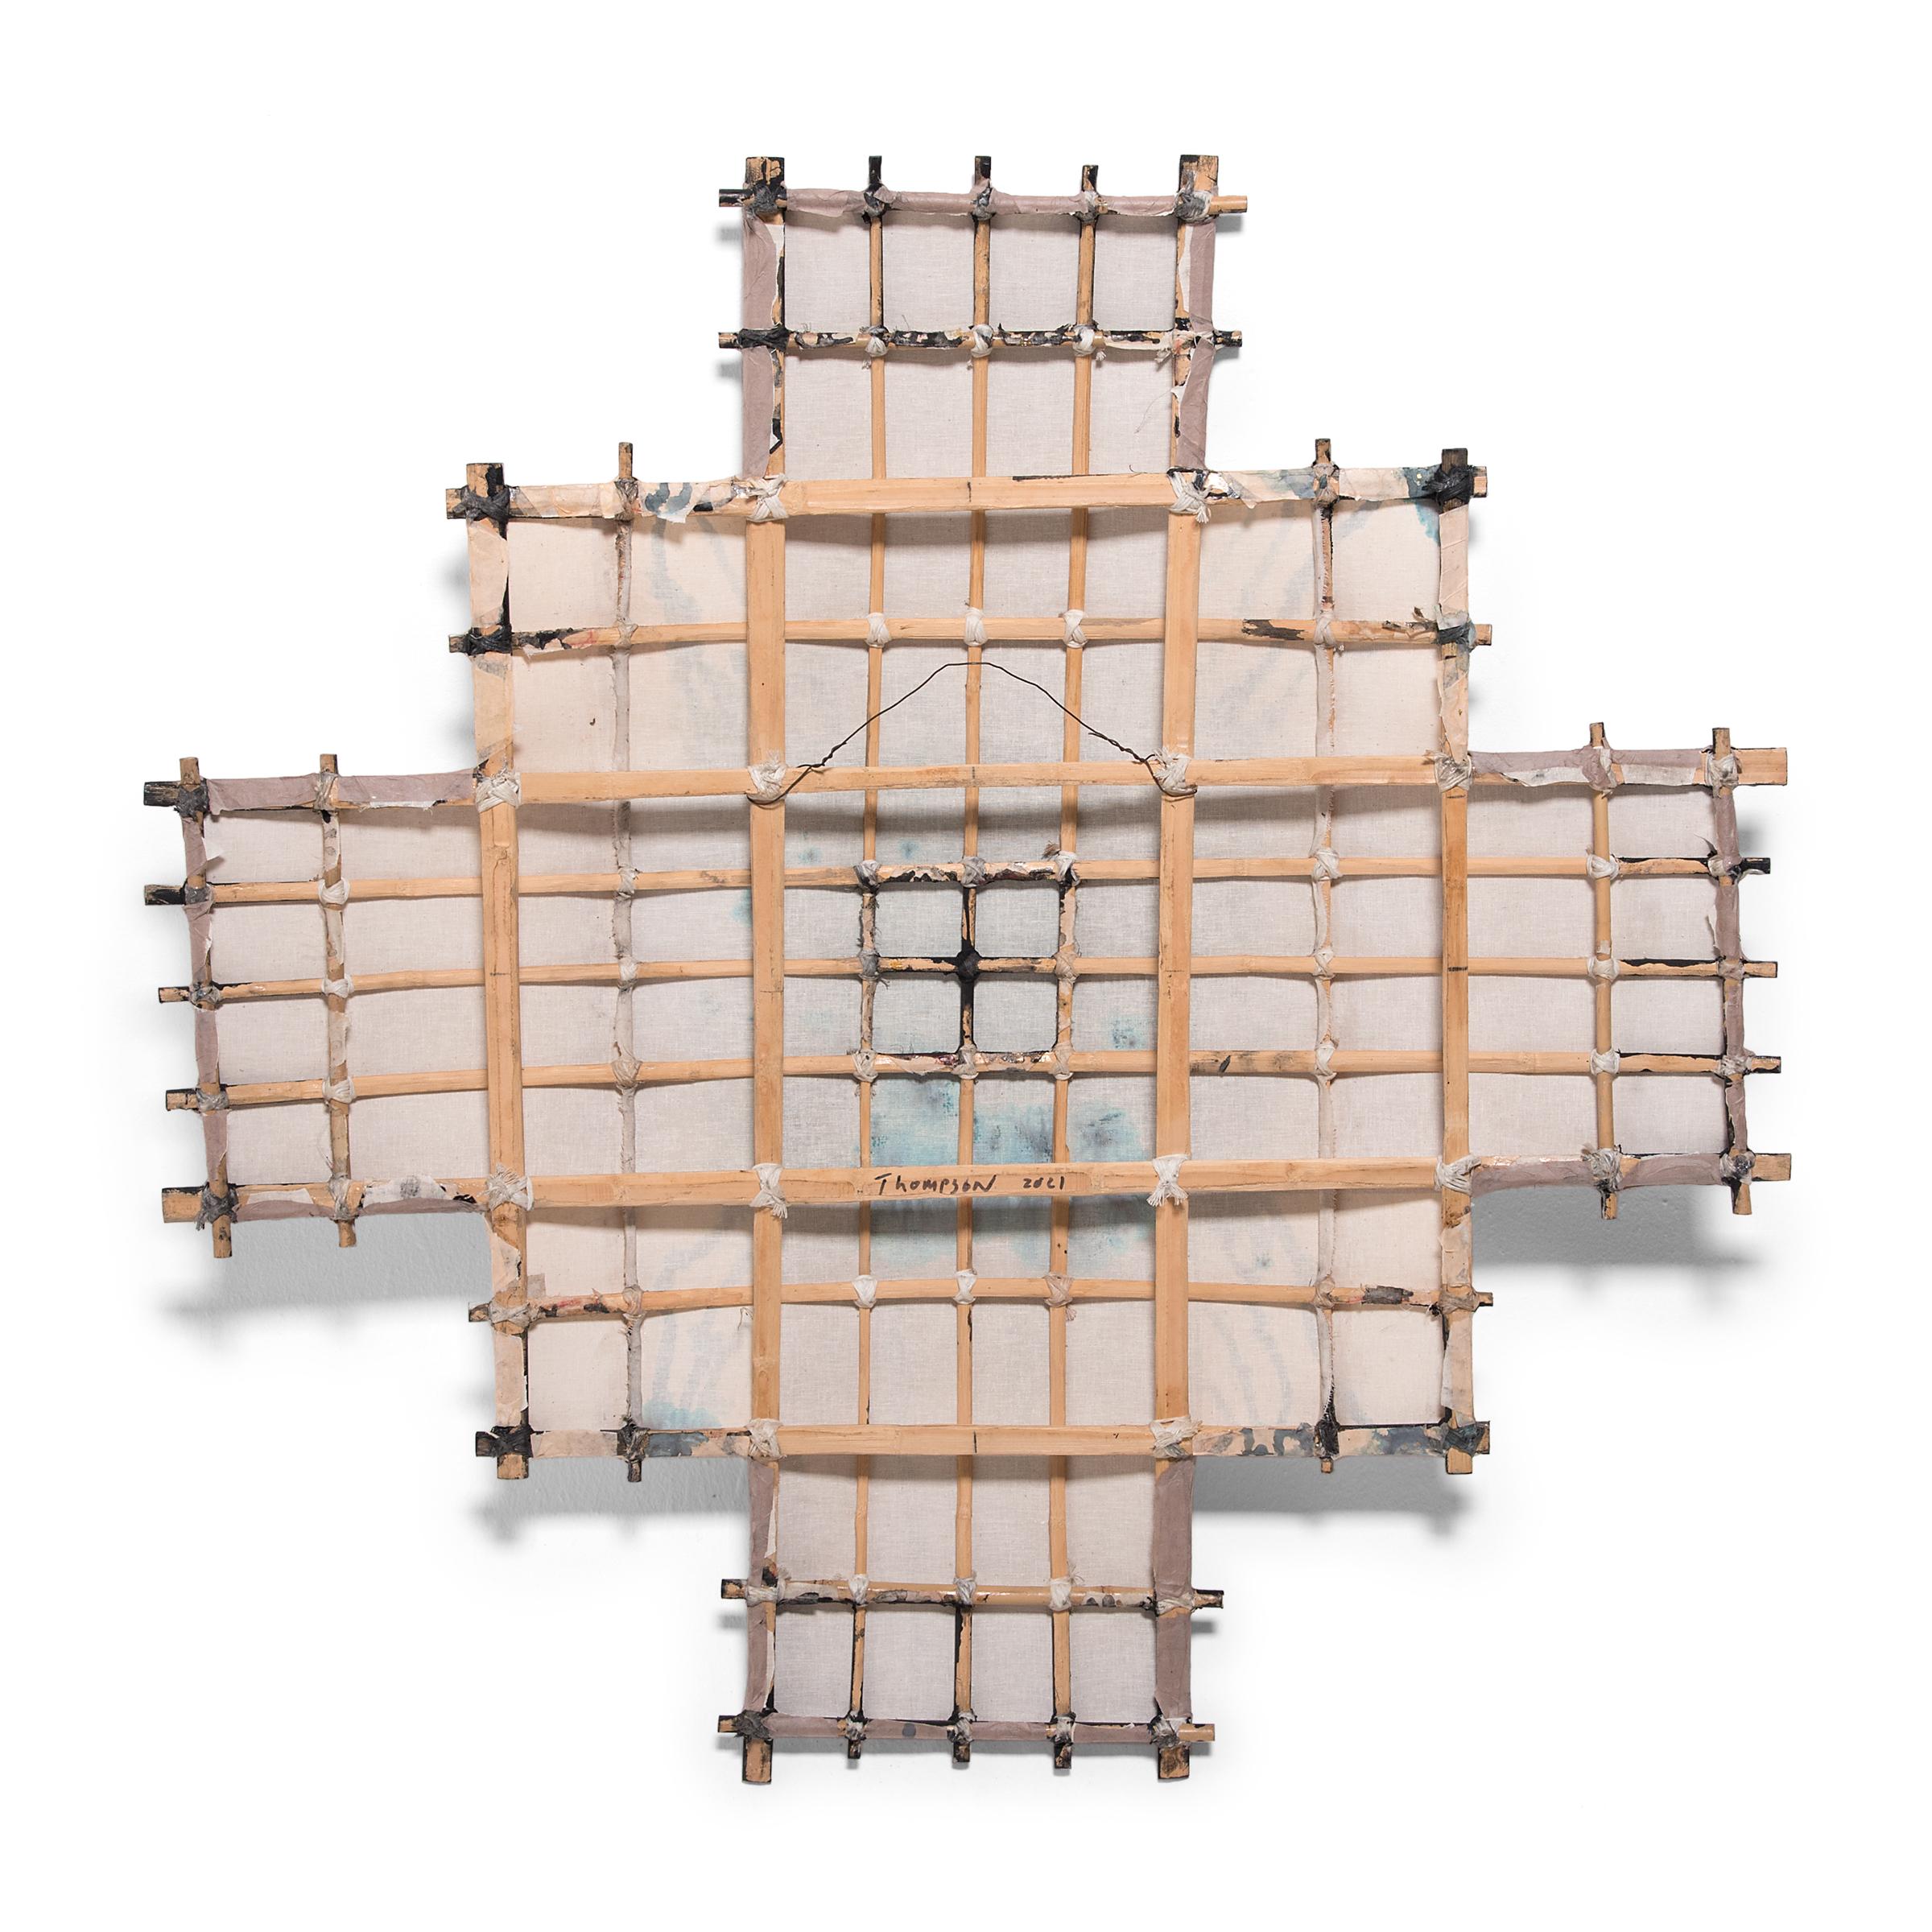 L'artiste Michael Thompson, basé à Chicago, crée des cerfs-volants uniques à partir de cadres en bambou fendu recouverts de mousseline tendue et d'un collage d'éphémères asiatiques vintage - y compris des fragments de tissu, des rouleaux, des